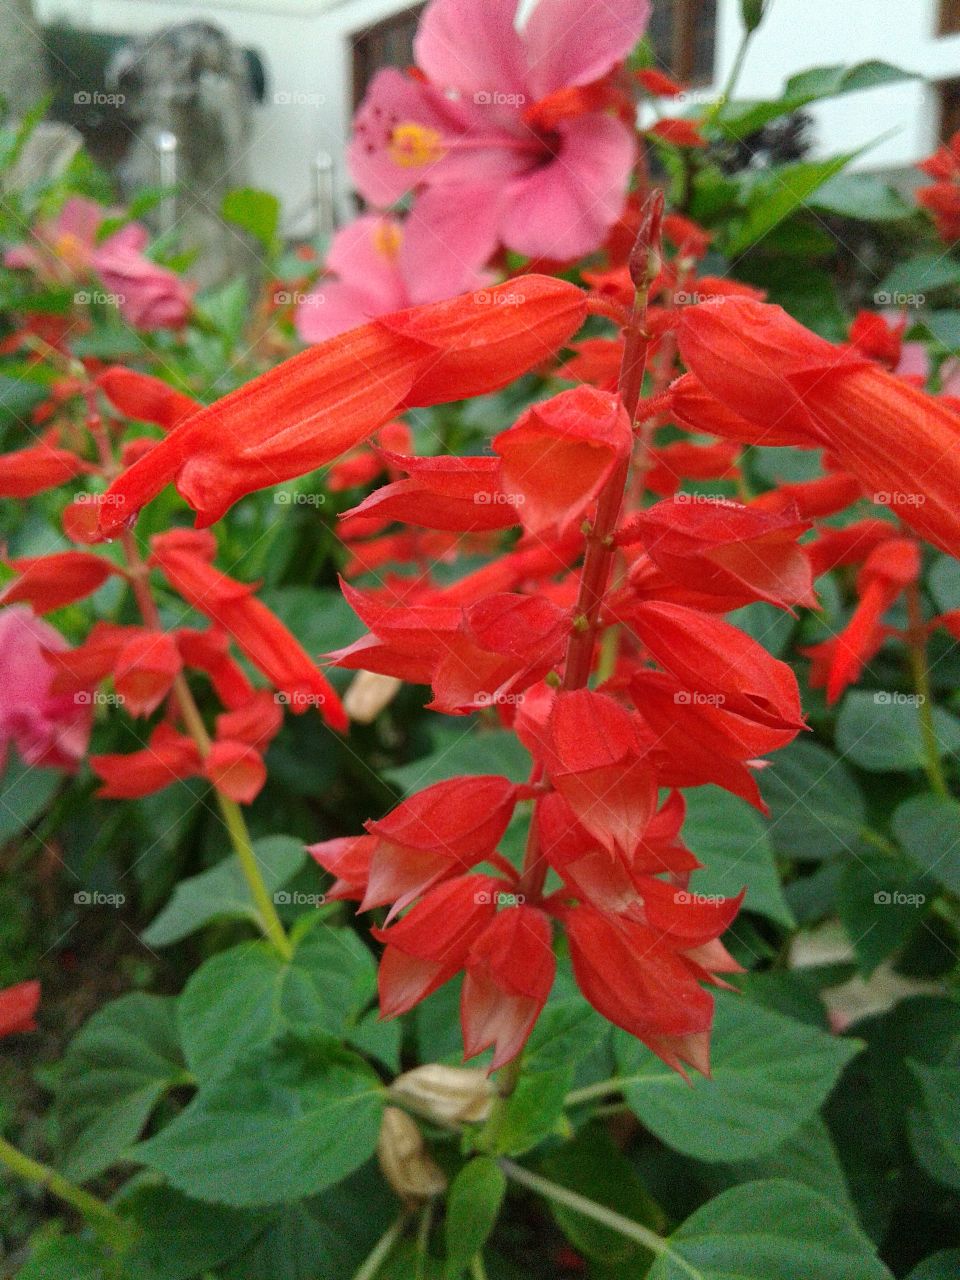 ref bell flower